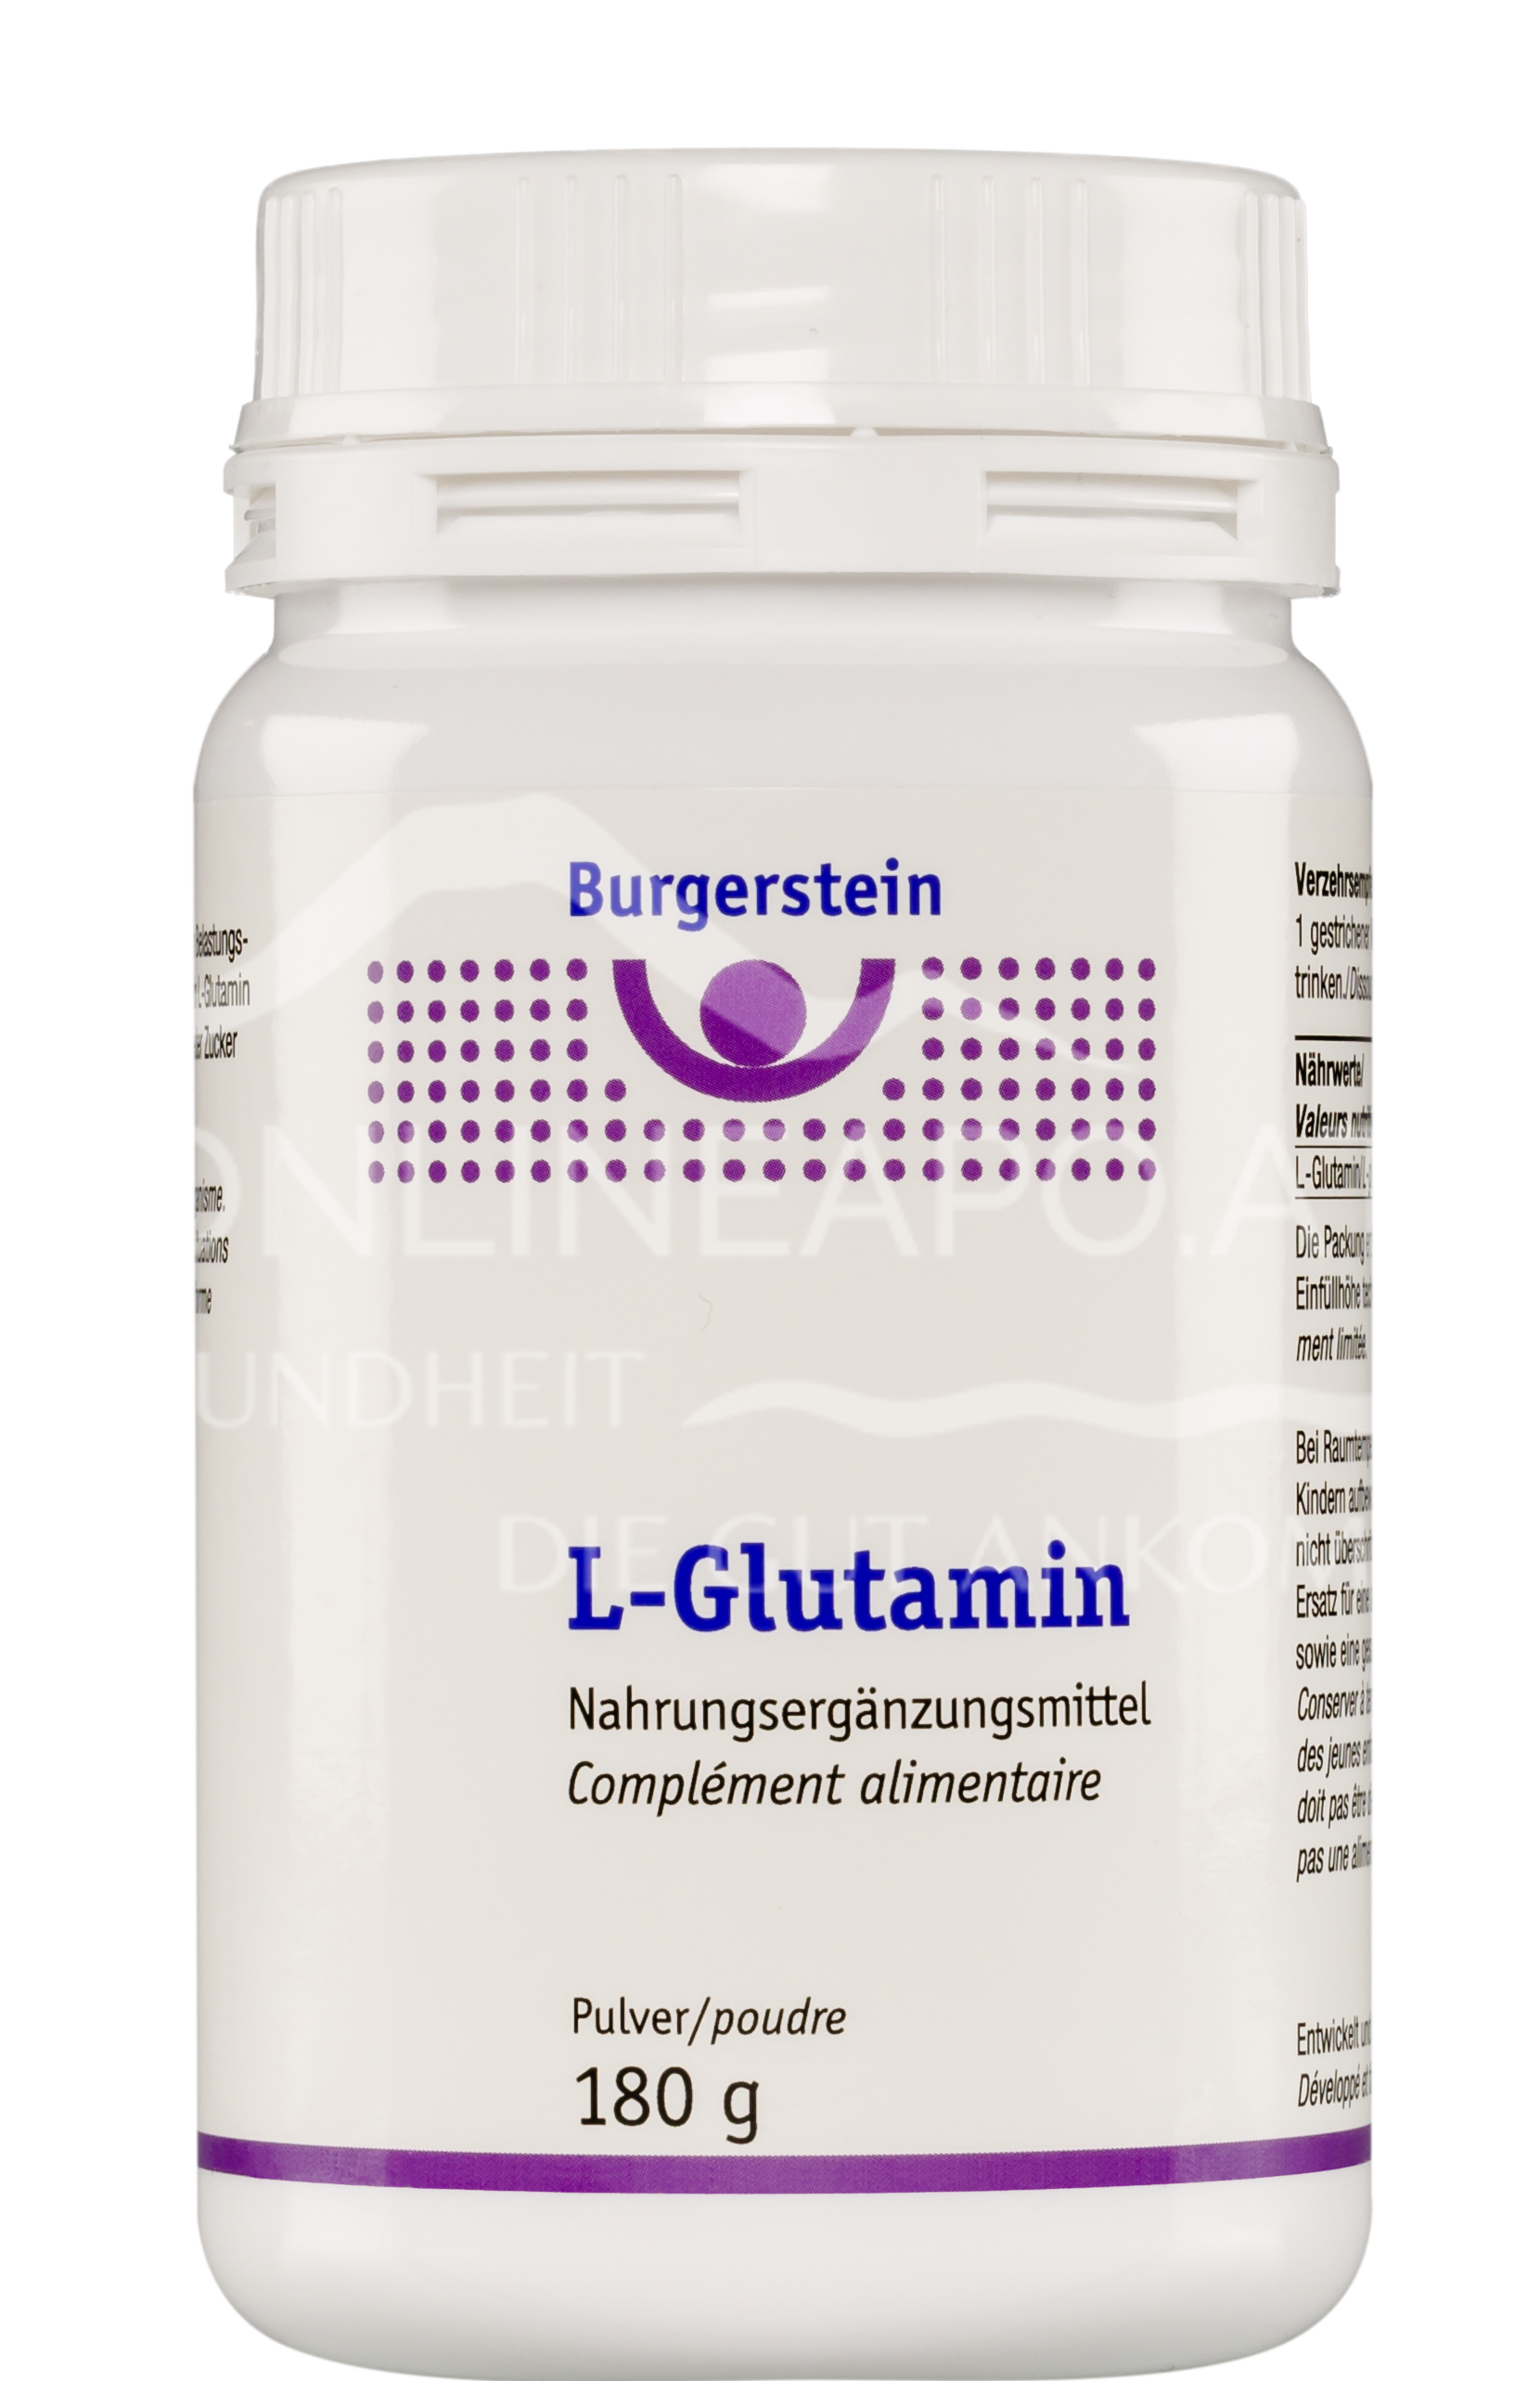 Burgerstein L-Glutamin Pulver